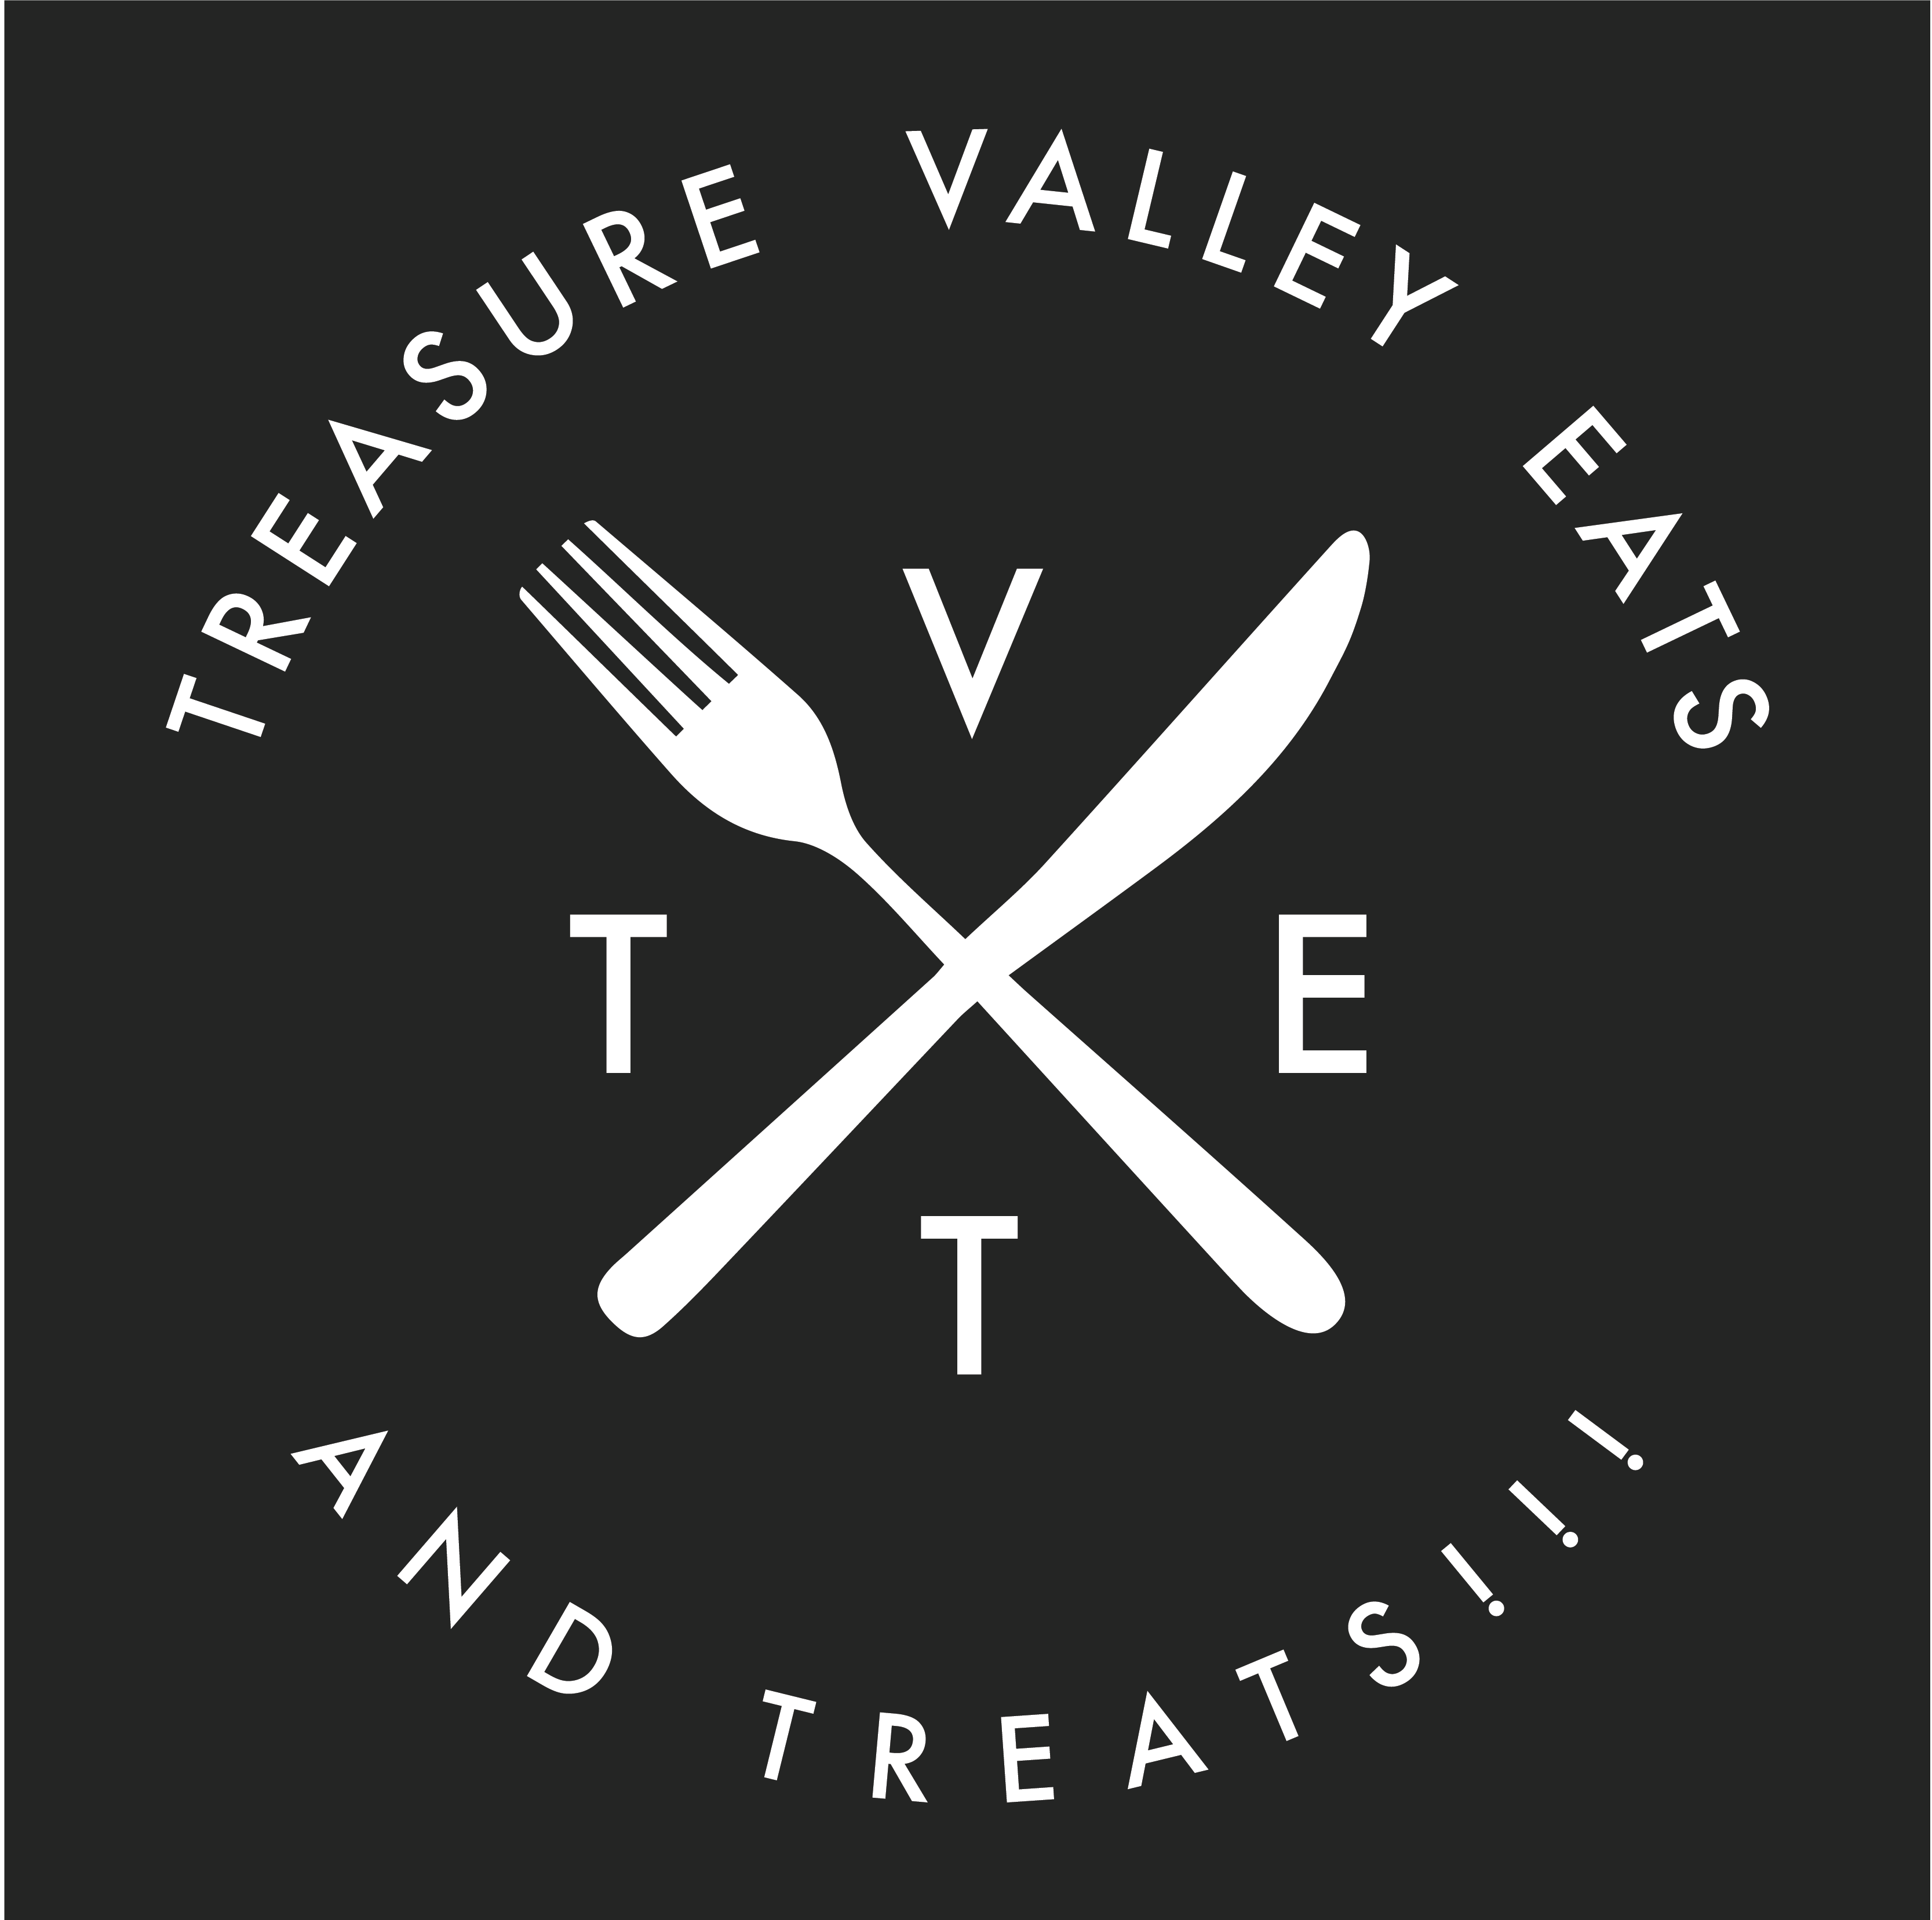 Treasure Valley Eats…and Treats!